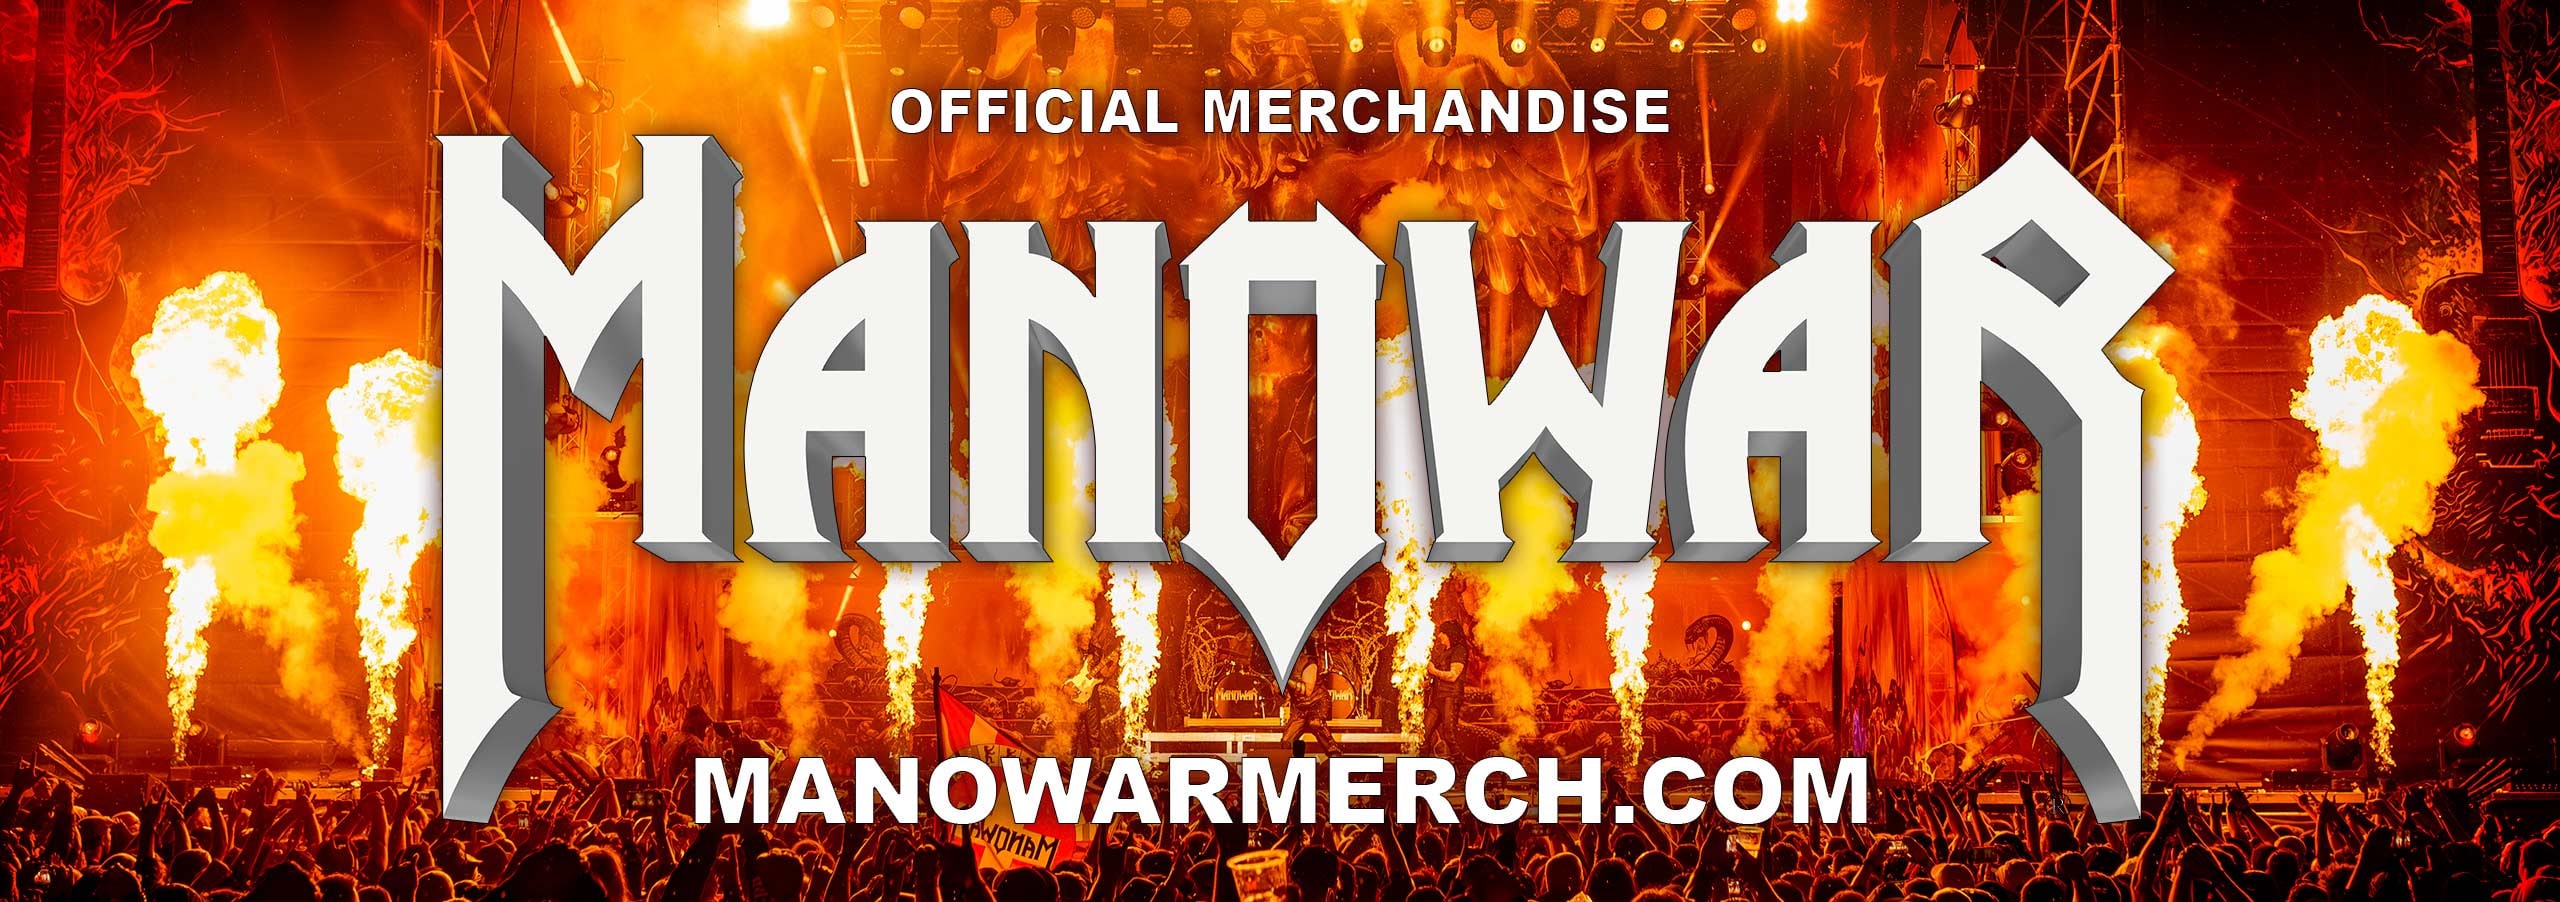 MANOWAR MERCH - the official MANOWAR merchandise store